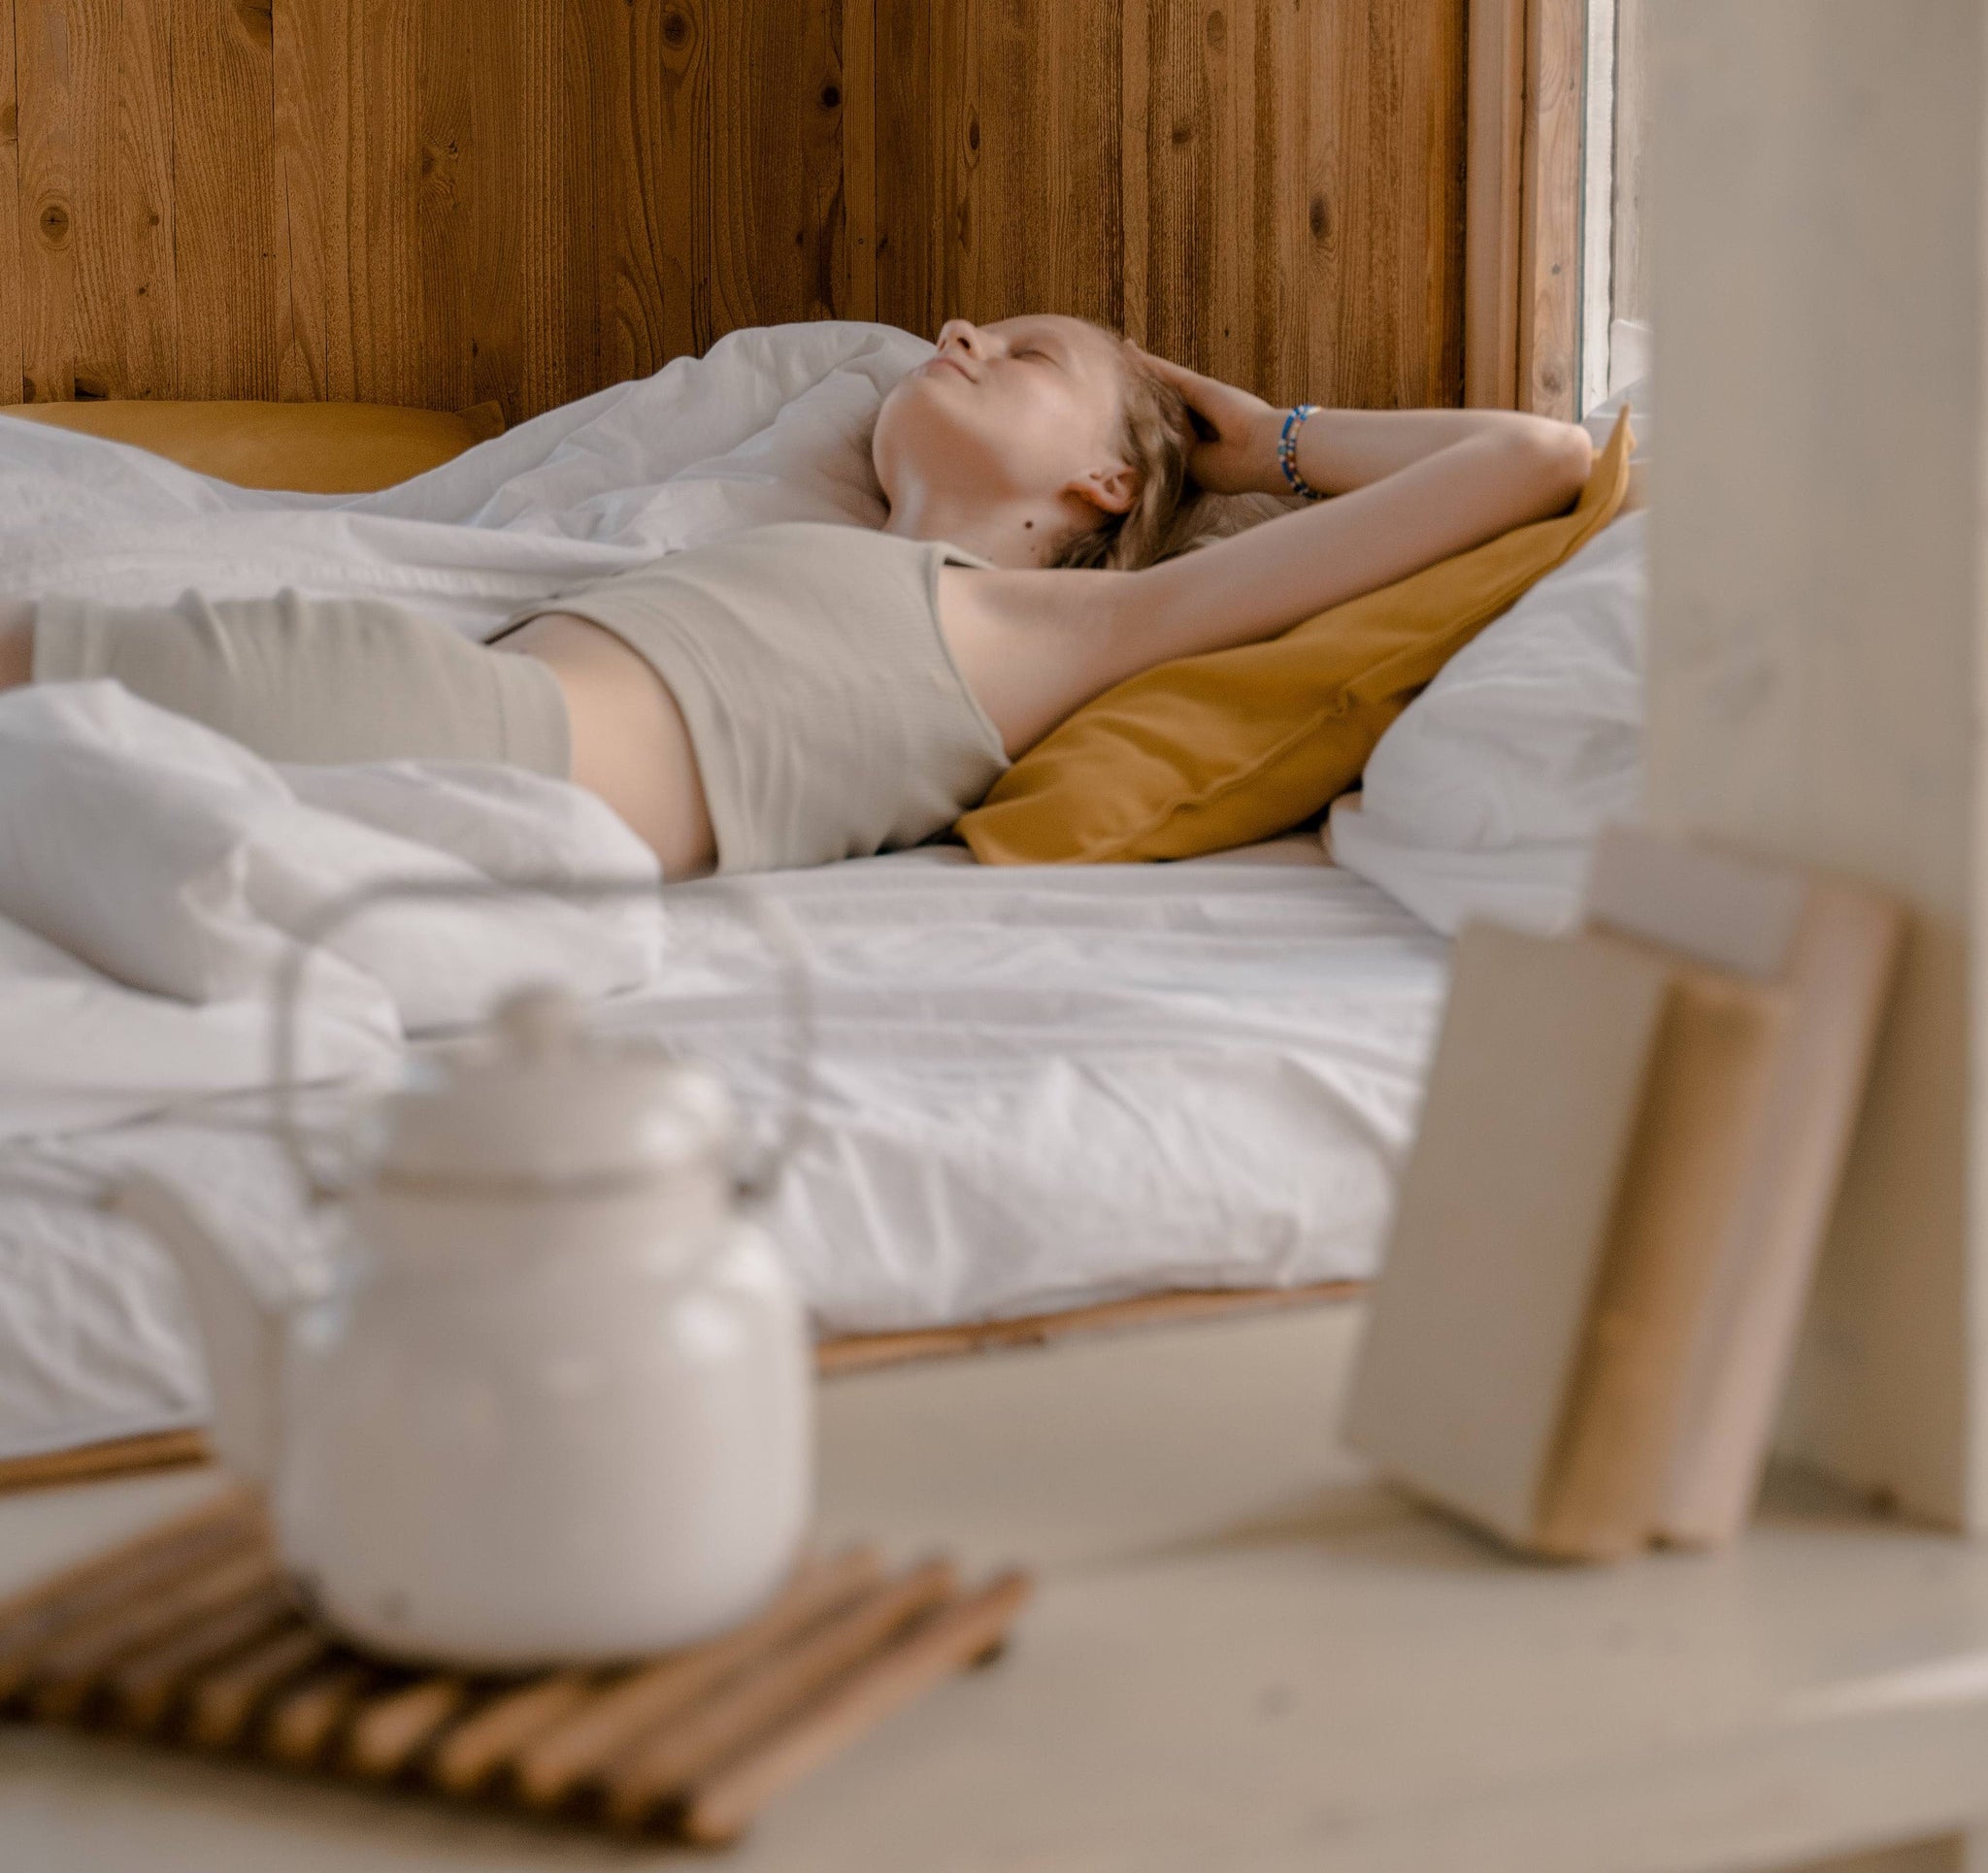 Frau im beigen Top und beiger Hose liegt mit geschlossenen Augen im Bett. Im Vordergrund ein Regal mit einer weißen Teekanne und zwei weißen Büchern.